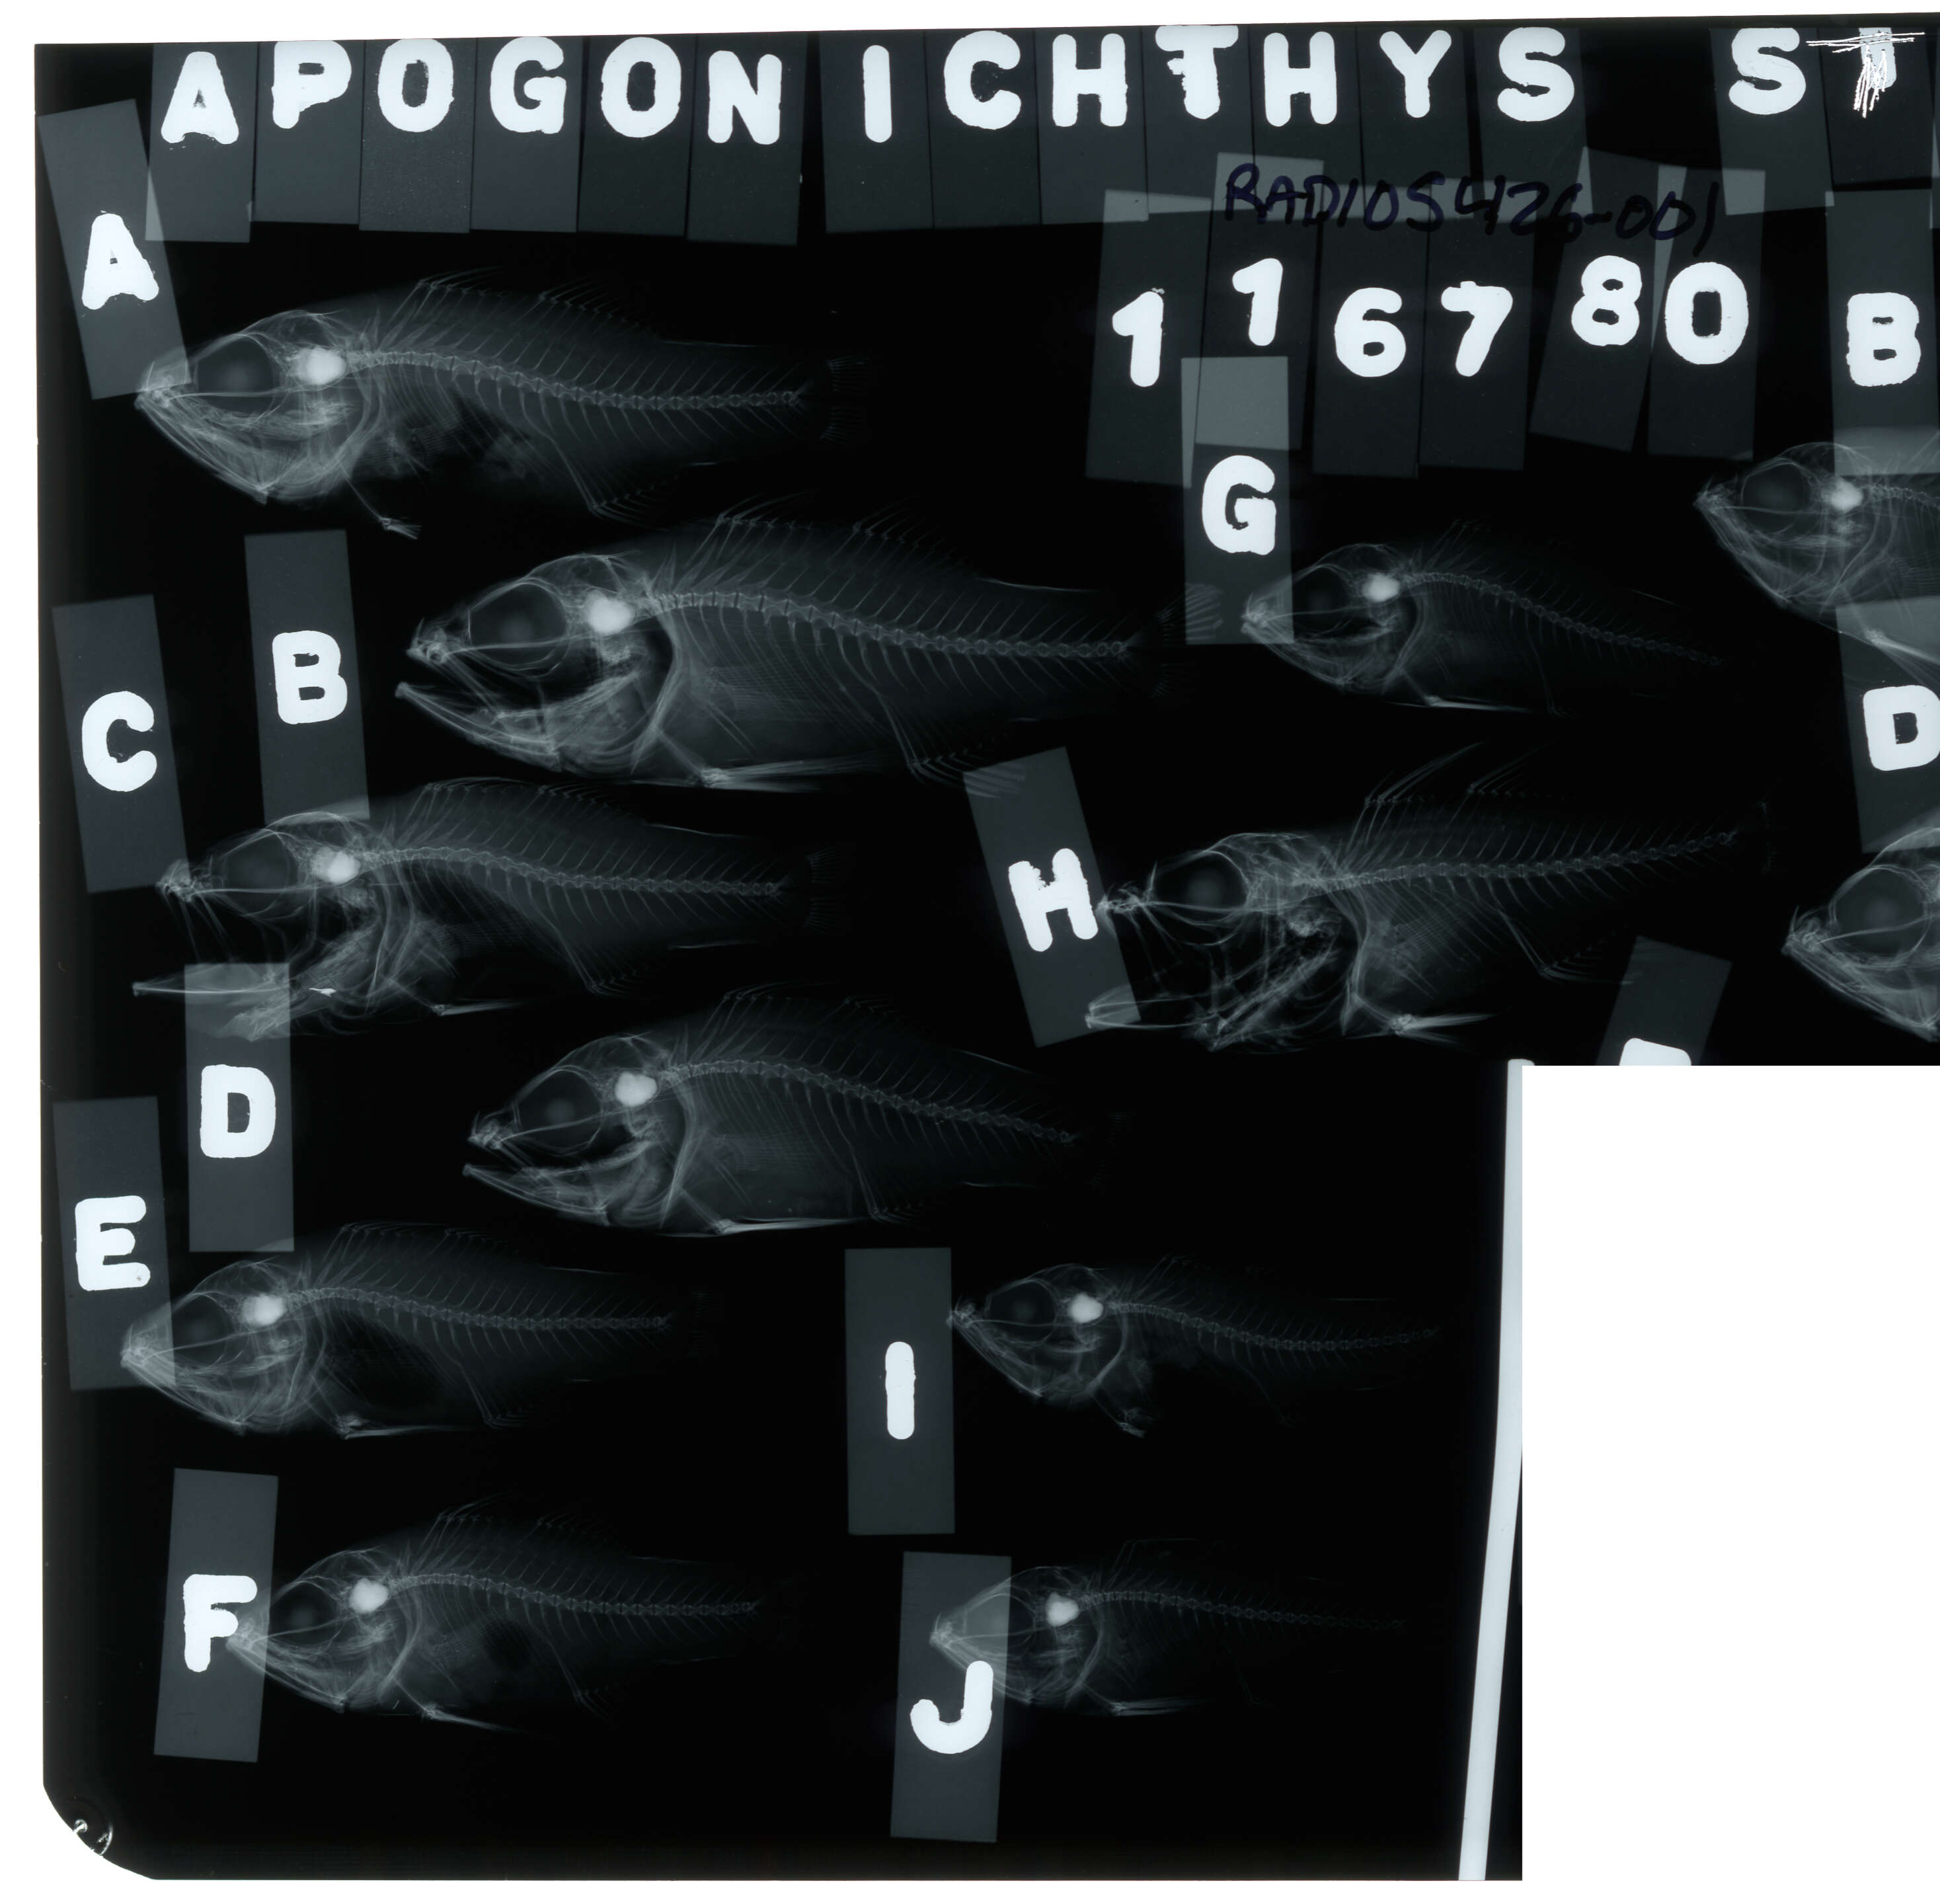 Image of Conchfish